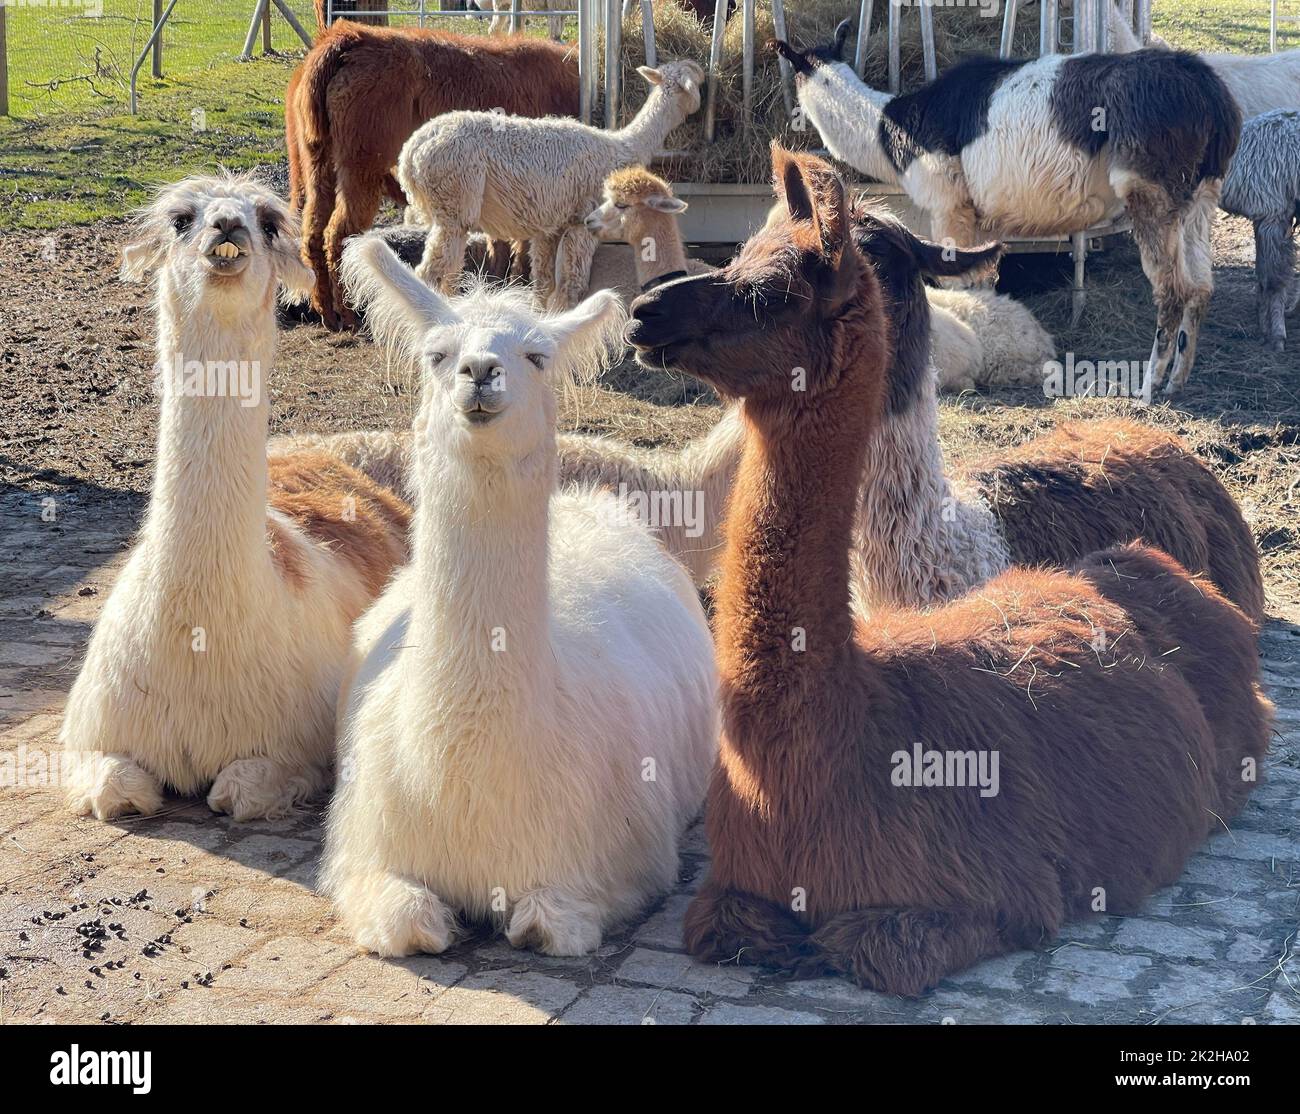 Das lama, lama glama e Alpakas sind eine Art der Kamele. Sie sind in den suedamerikanischen Anden verbreitet und eine vom Guanako abstammende Hausti Foto Stock